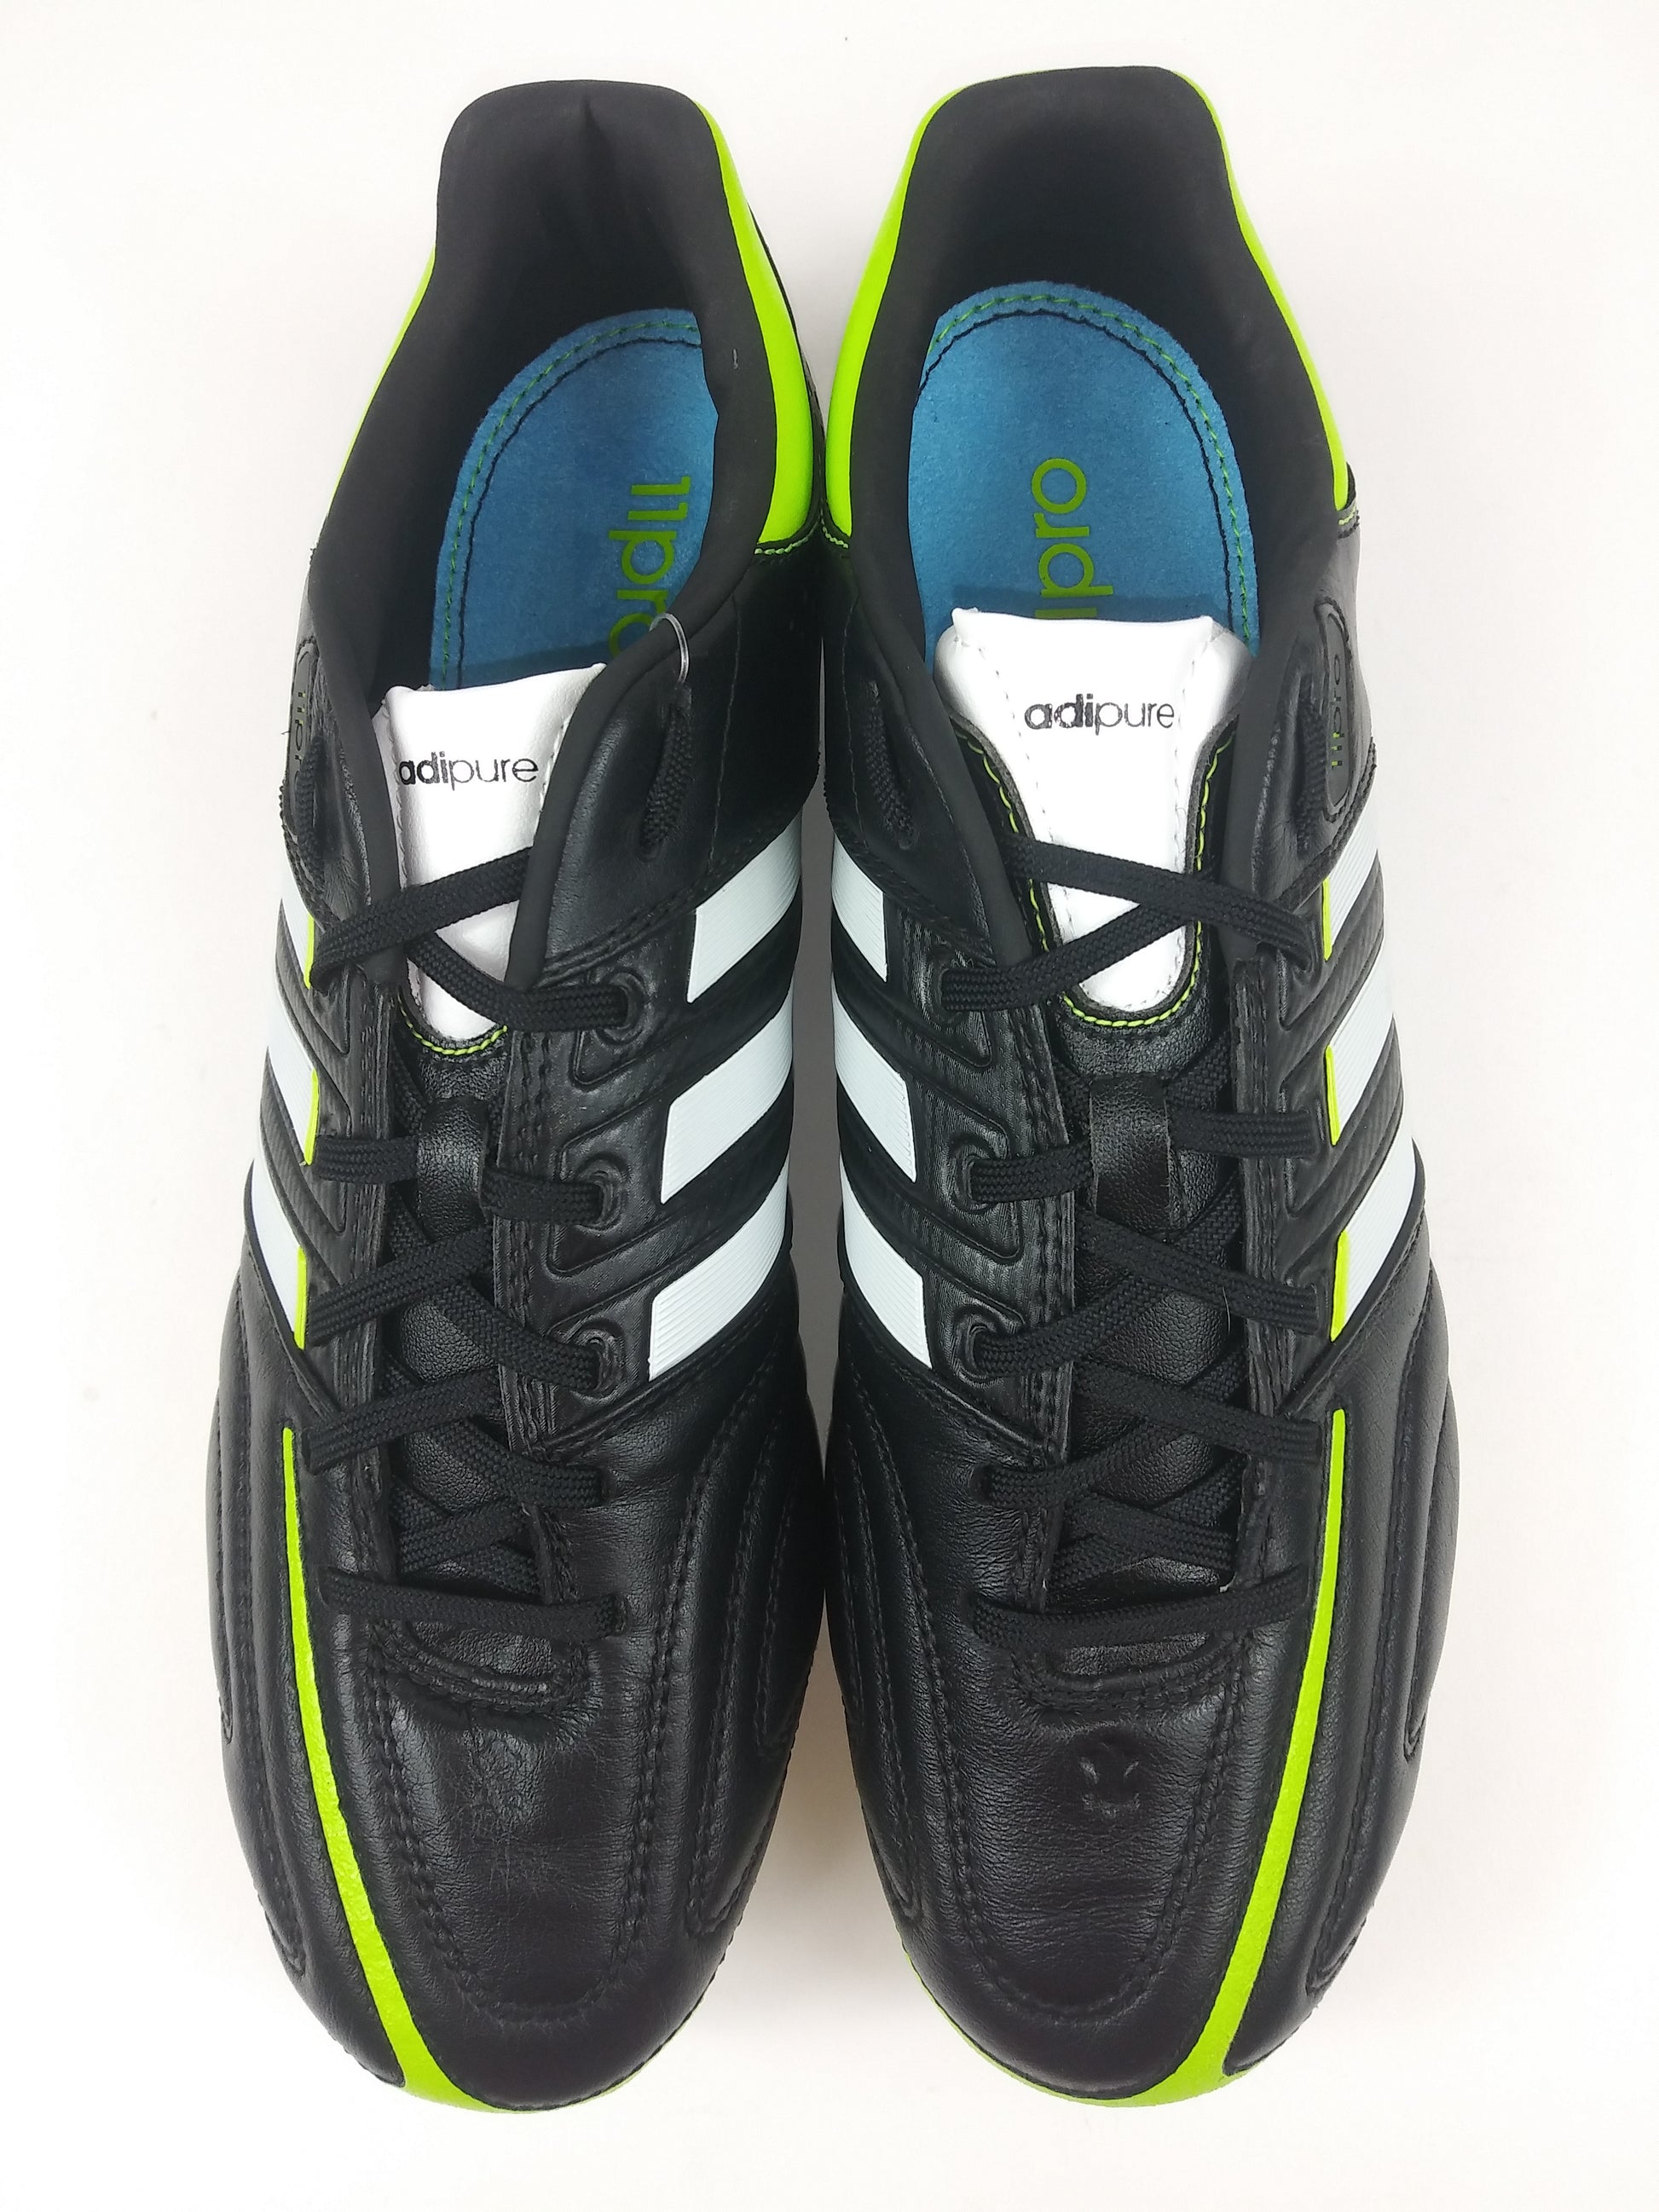 vredig Heel veel goeds groot Adidas adipure 11Pro TRX FG Black Green – Villegas Footwear